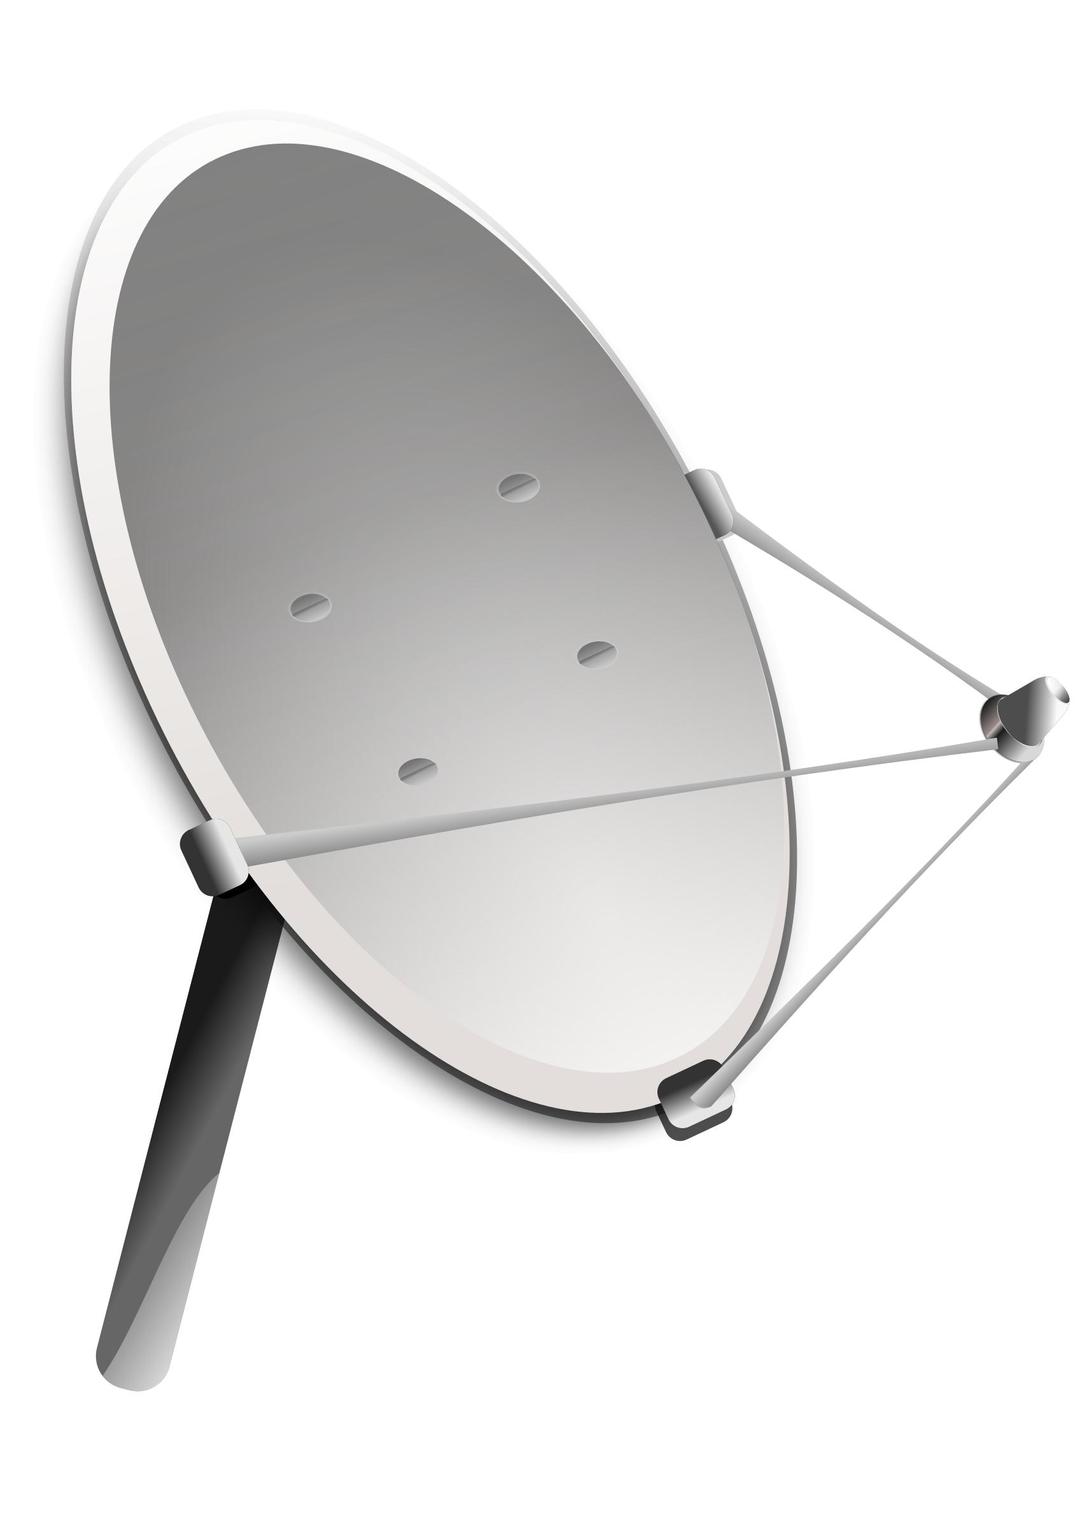 satellite antenna (dish) png transparent